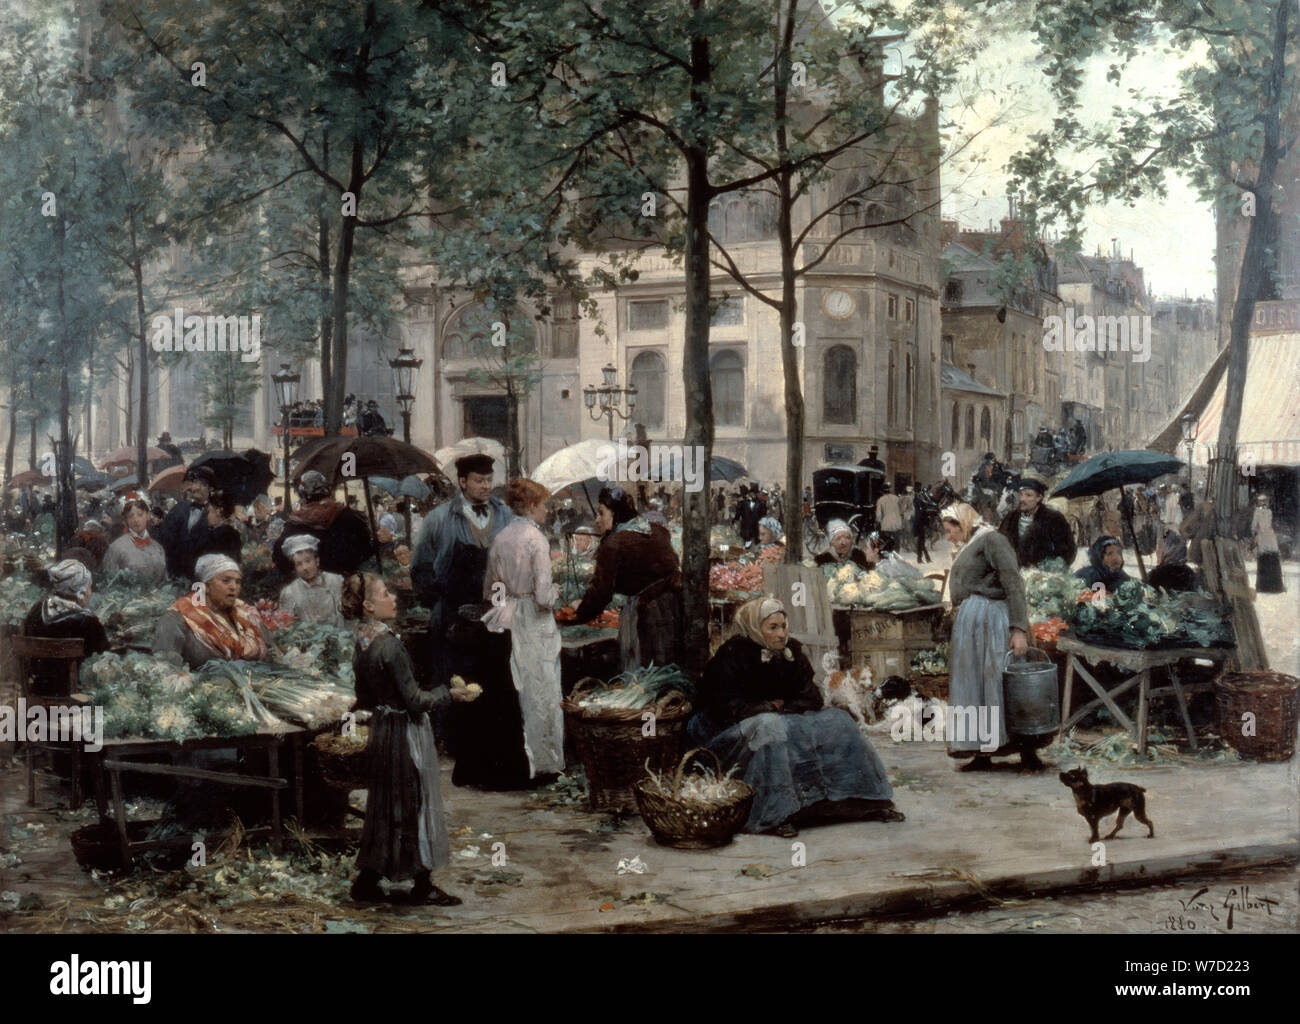 'Les Halles, Paris 'Central Market'', 1880. Artist: Gilbert Victor Gabriel Stock Photo